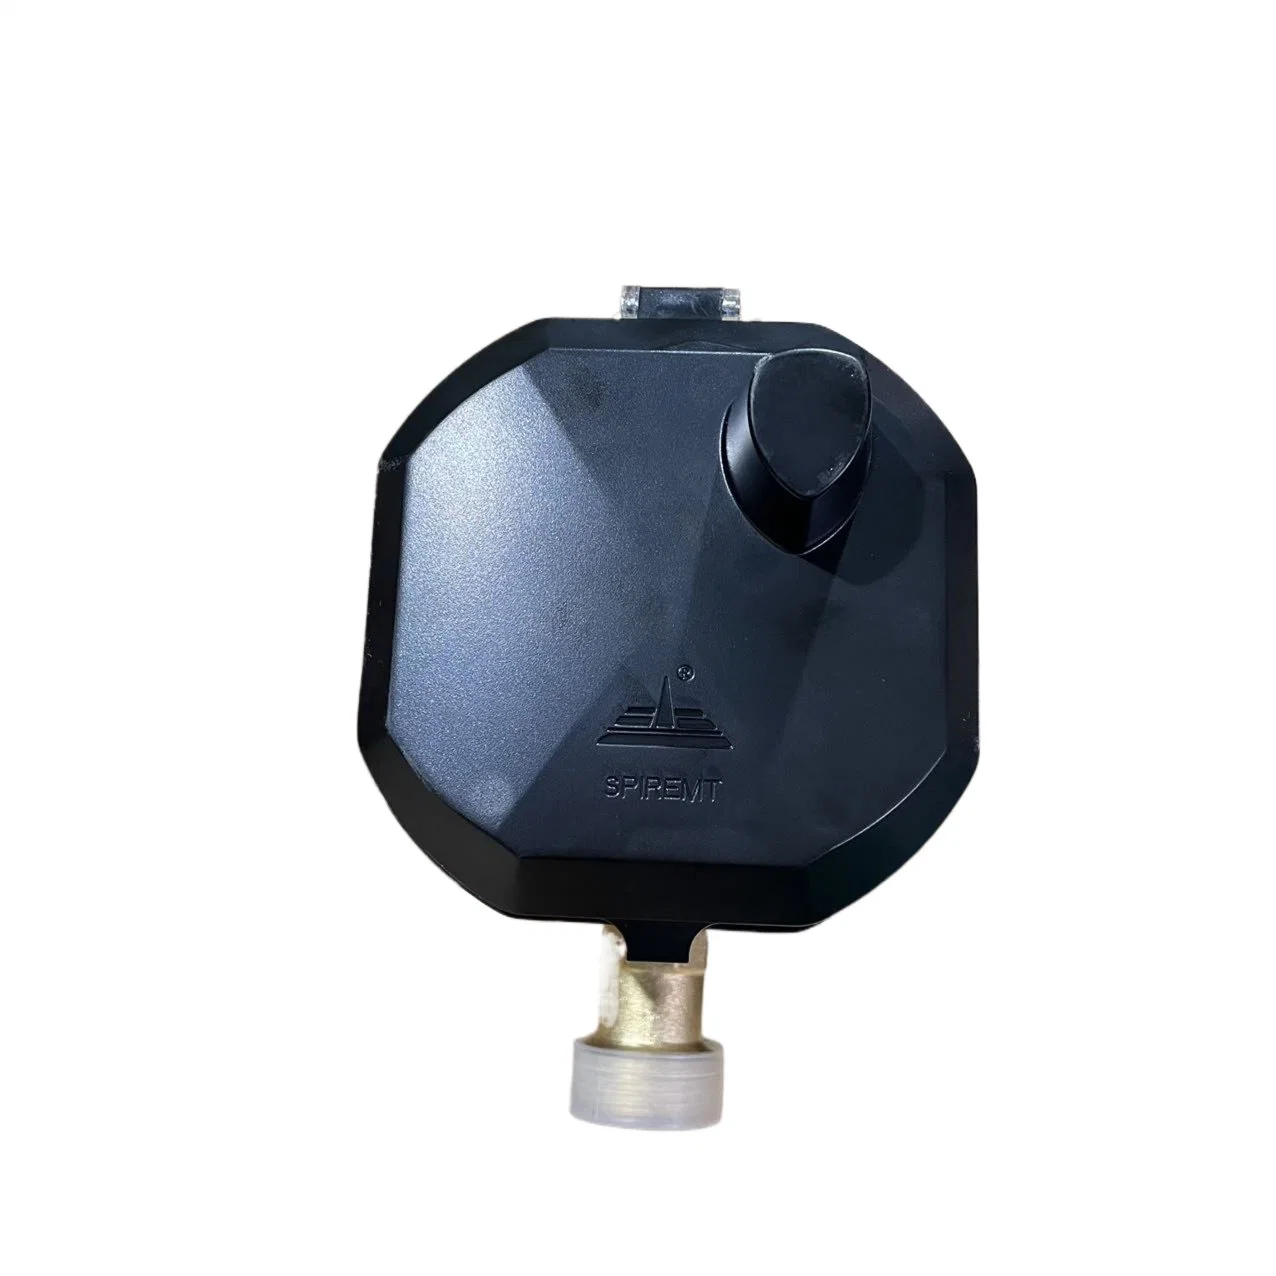 Ультразвуковой Smart Water Meter IP68 беспроводной пульт дистанционного управления M-Bus RS485 Lorawan Компактный цифровой интеллектуальный MID-Флометр для домашних помещений